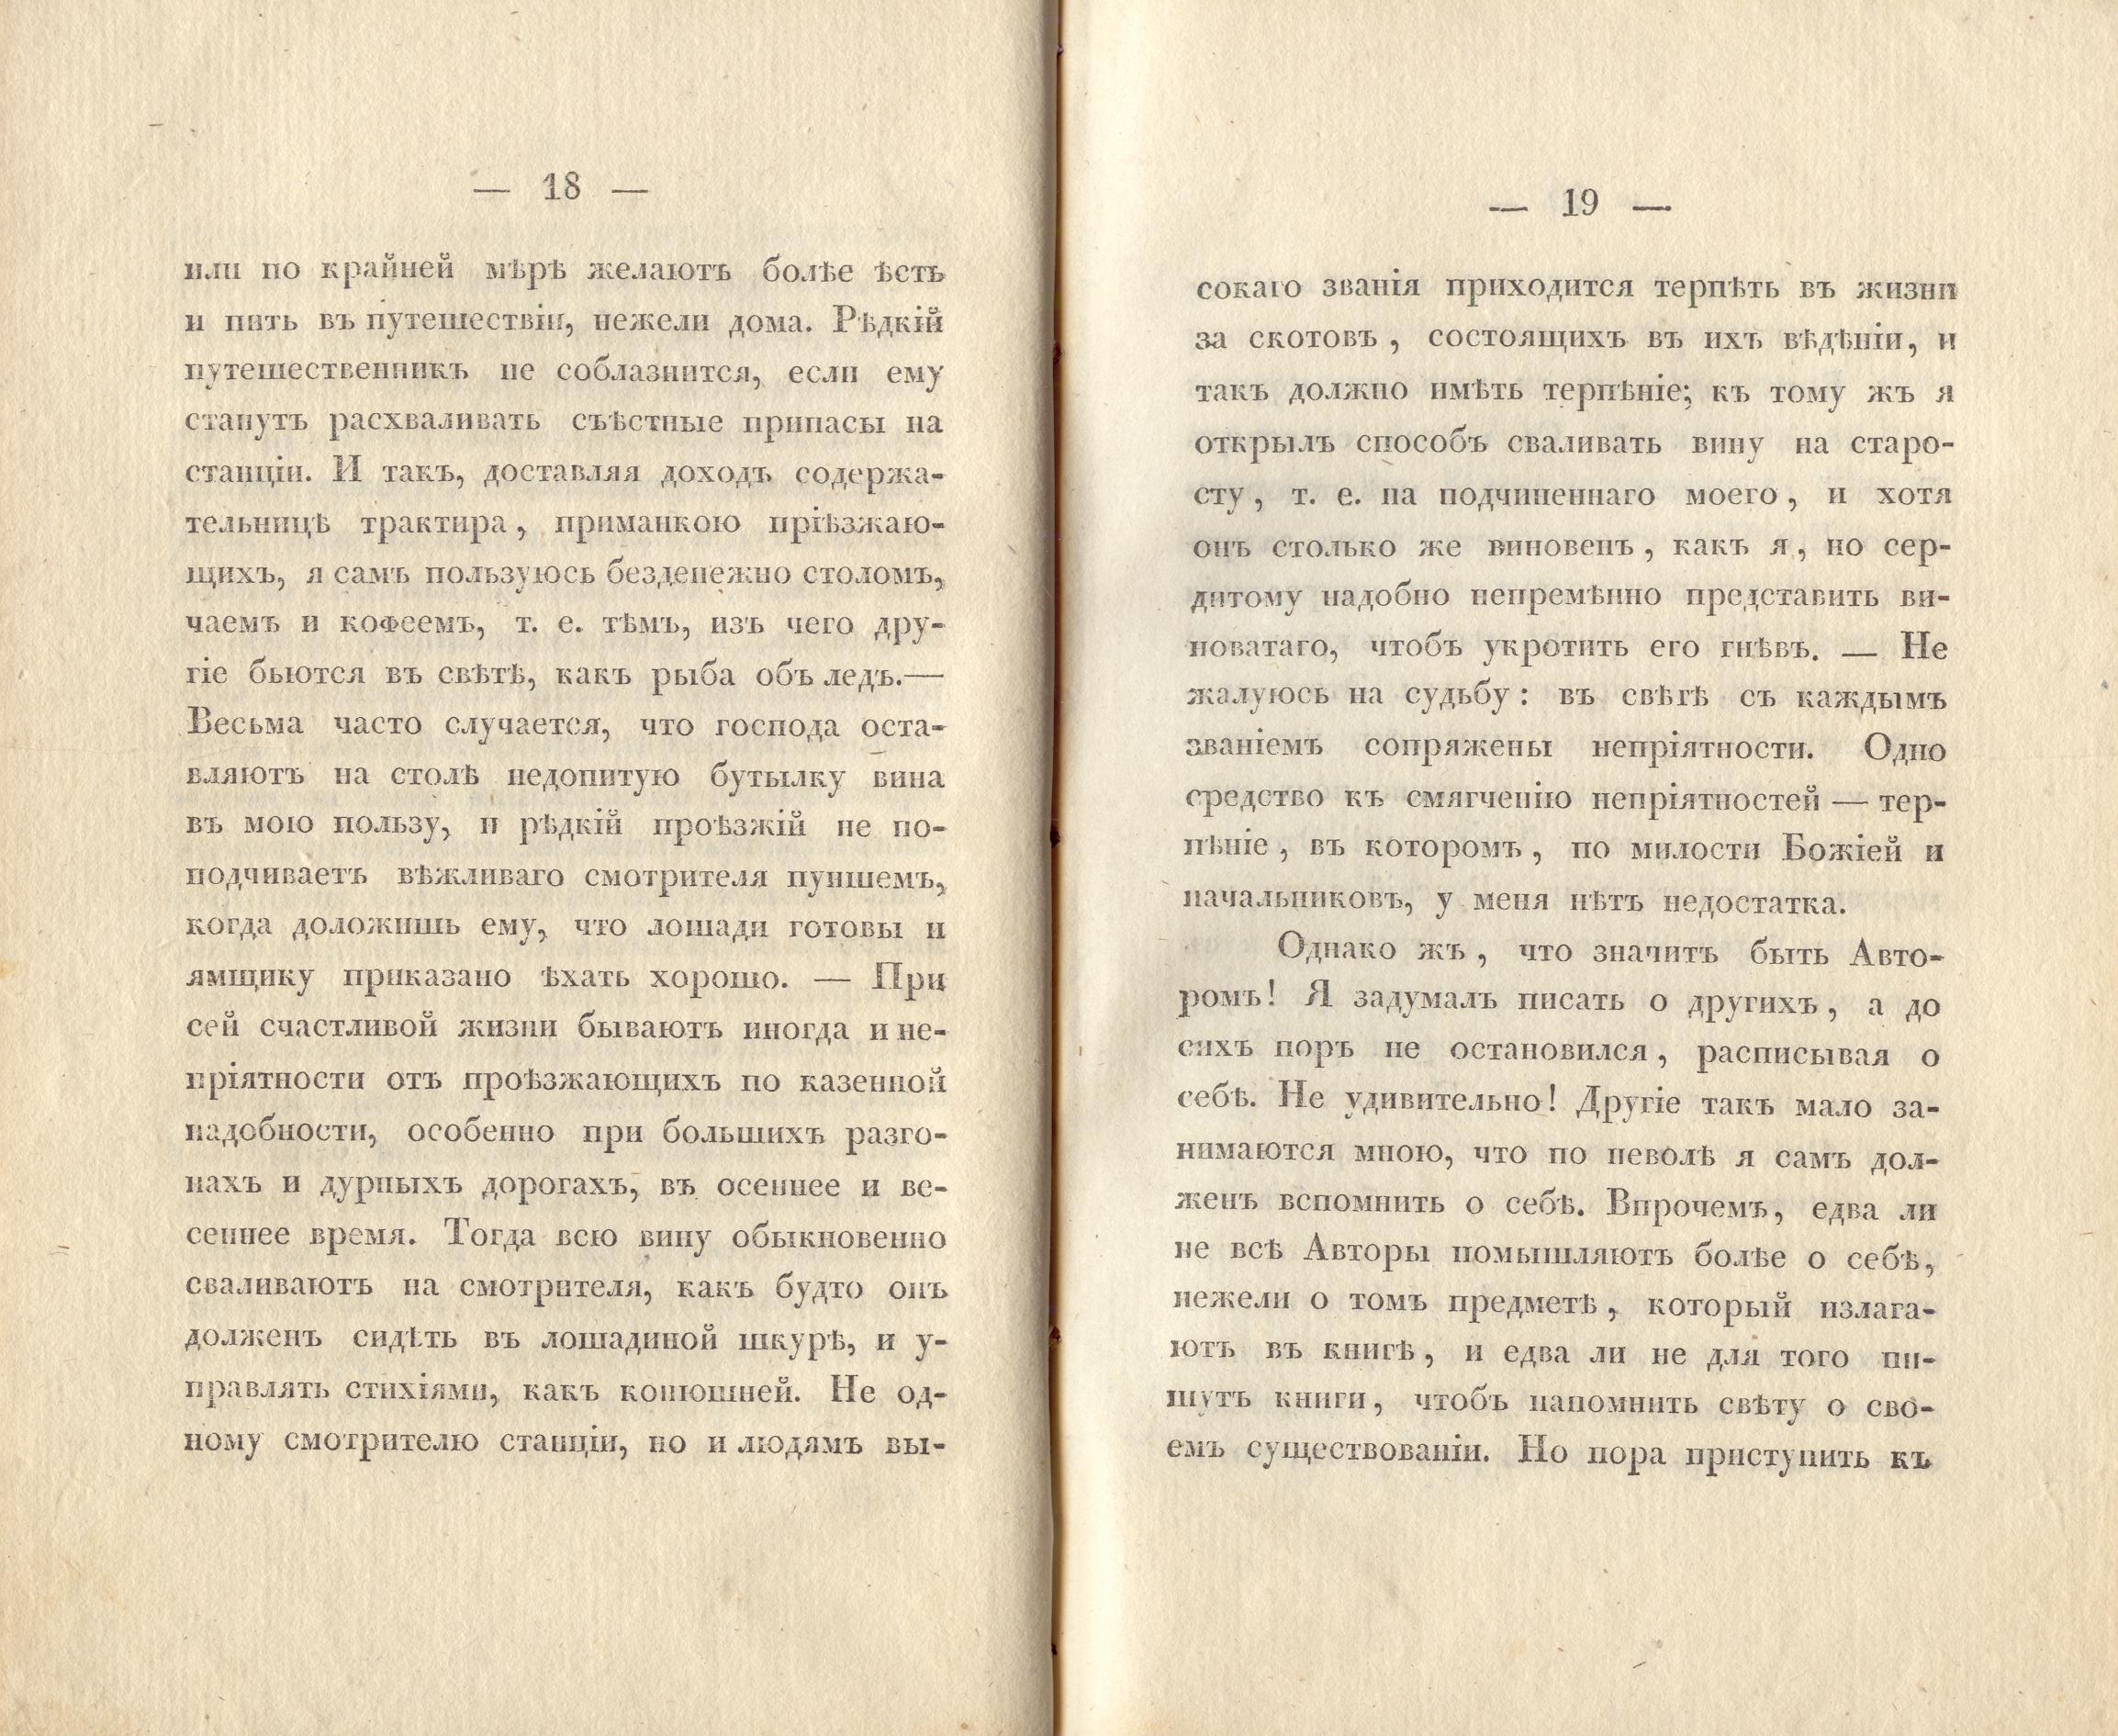 Сочиненія [2] (1836) | 12. (18-19) Main body of text